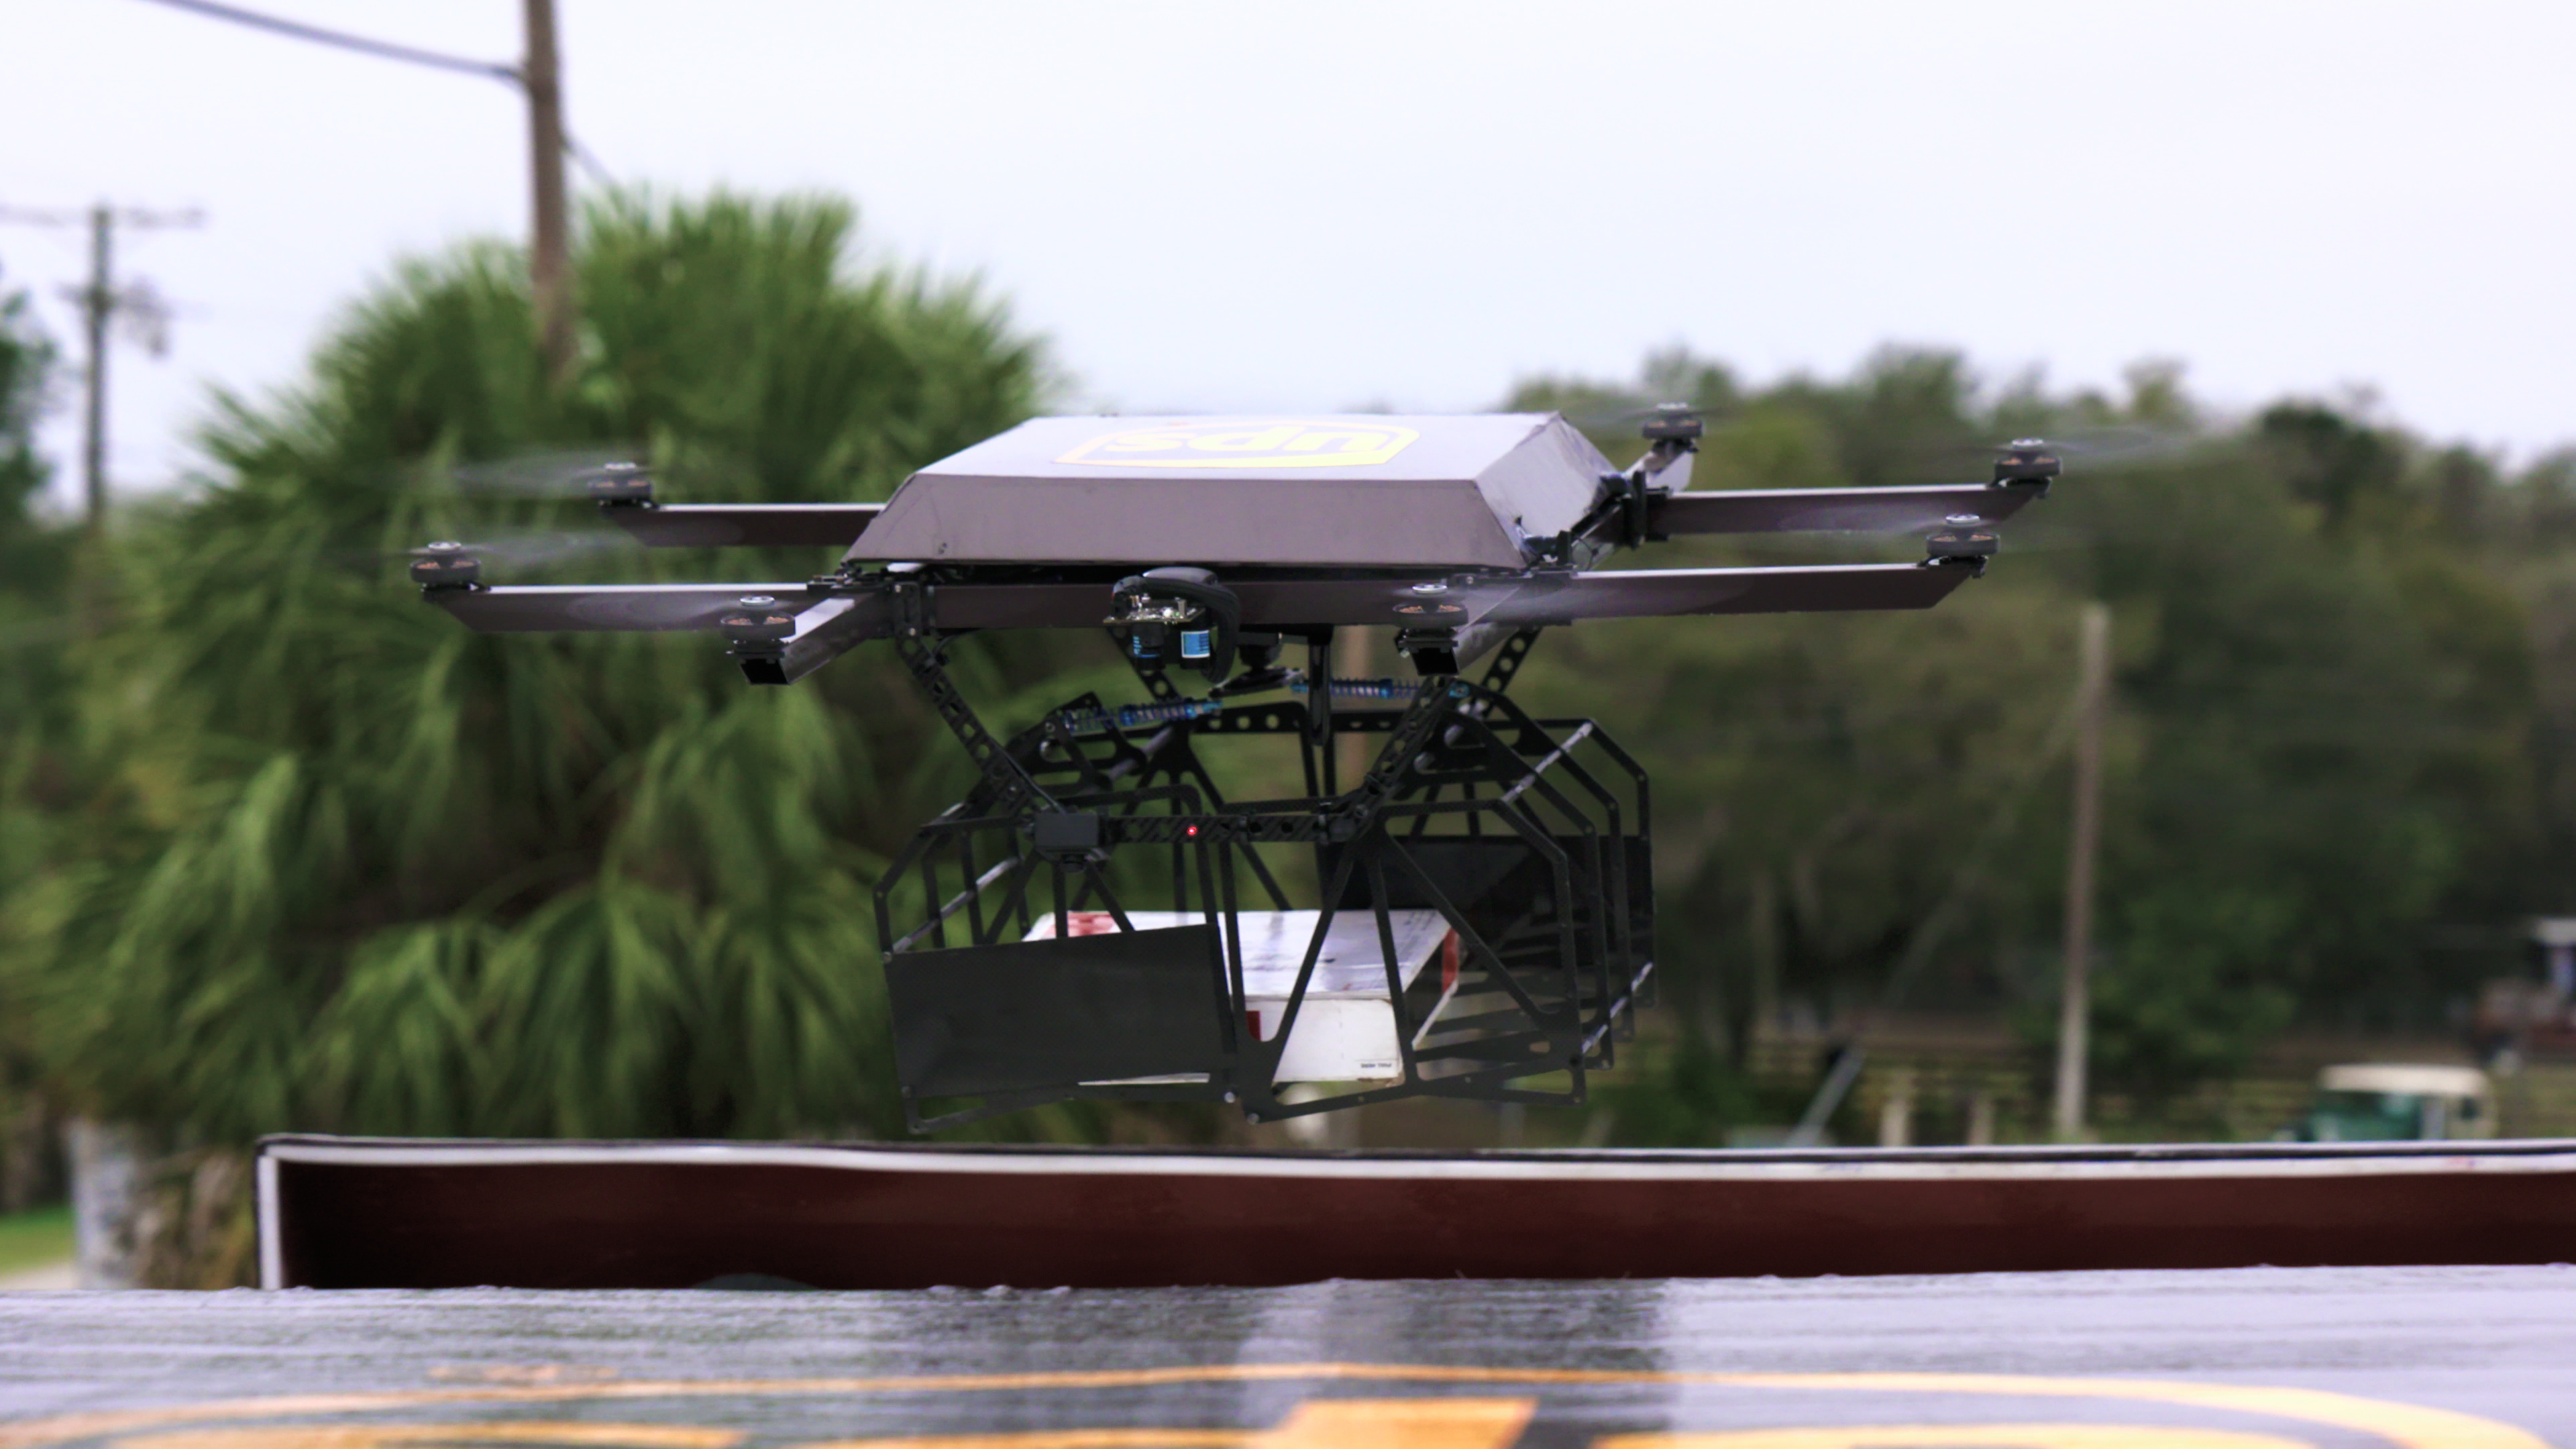 Η UPS επιδεικνύει την παράδοση με drone, αποδεικνύει ότι αργεί εκείνη η μέρα